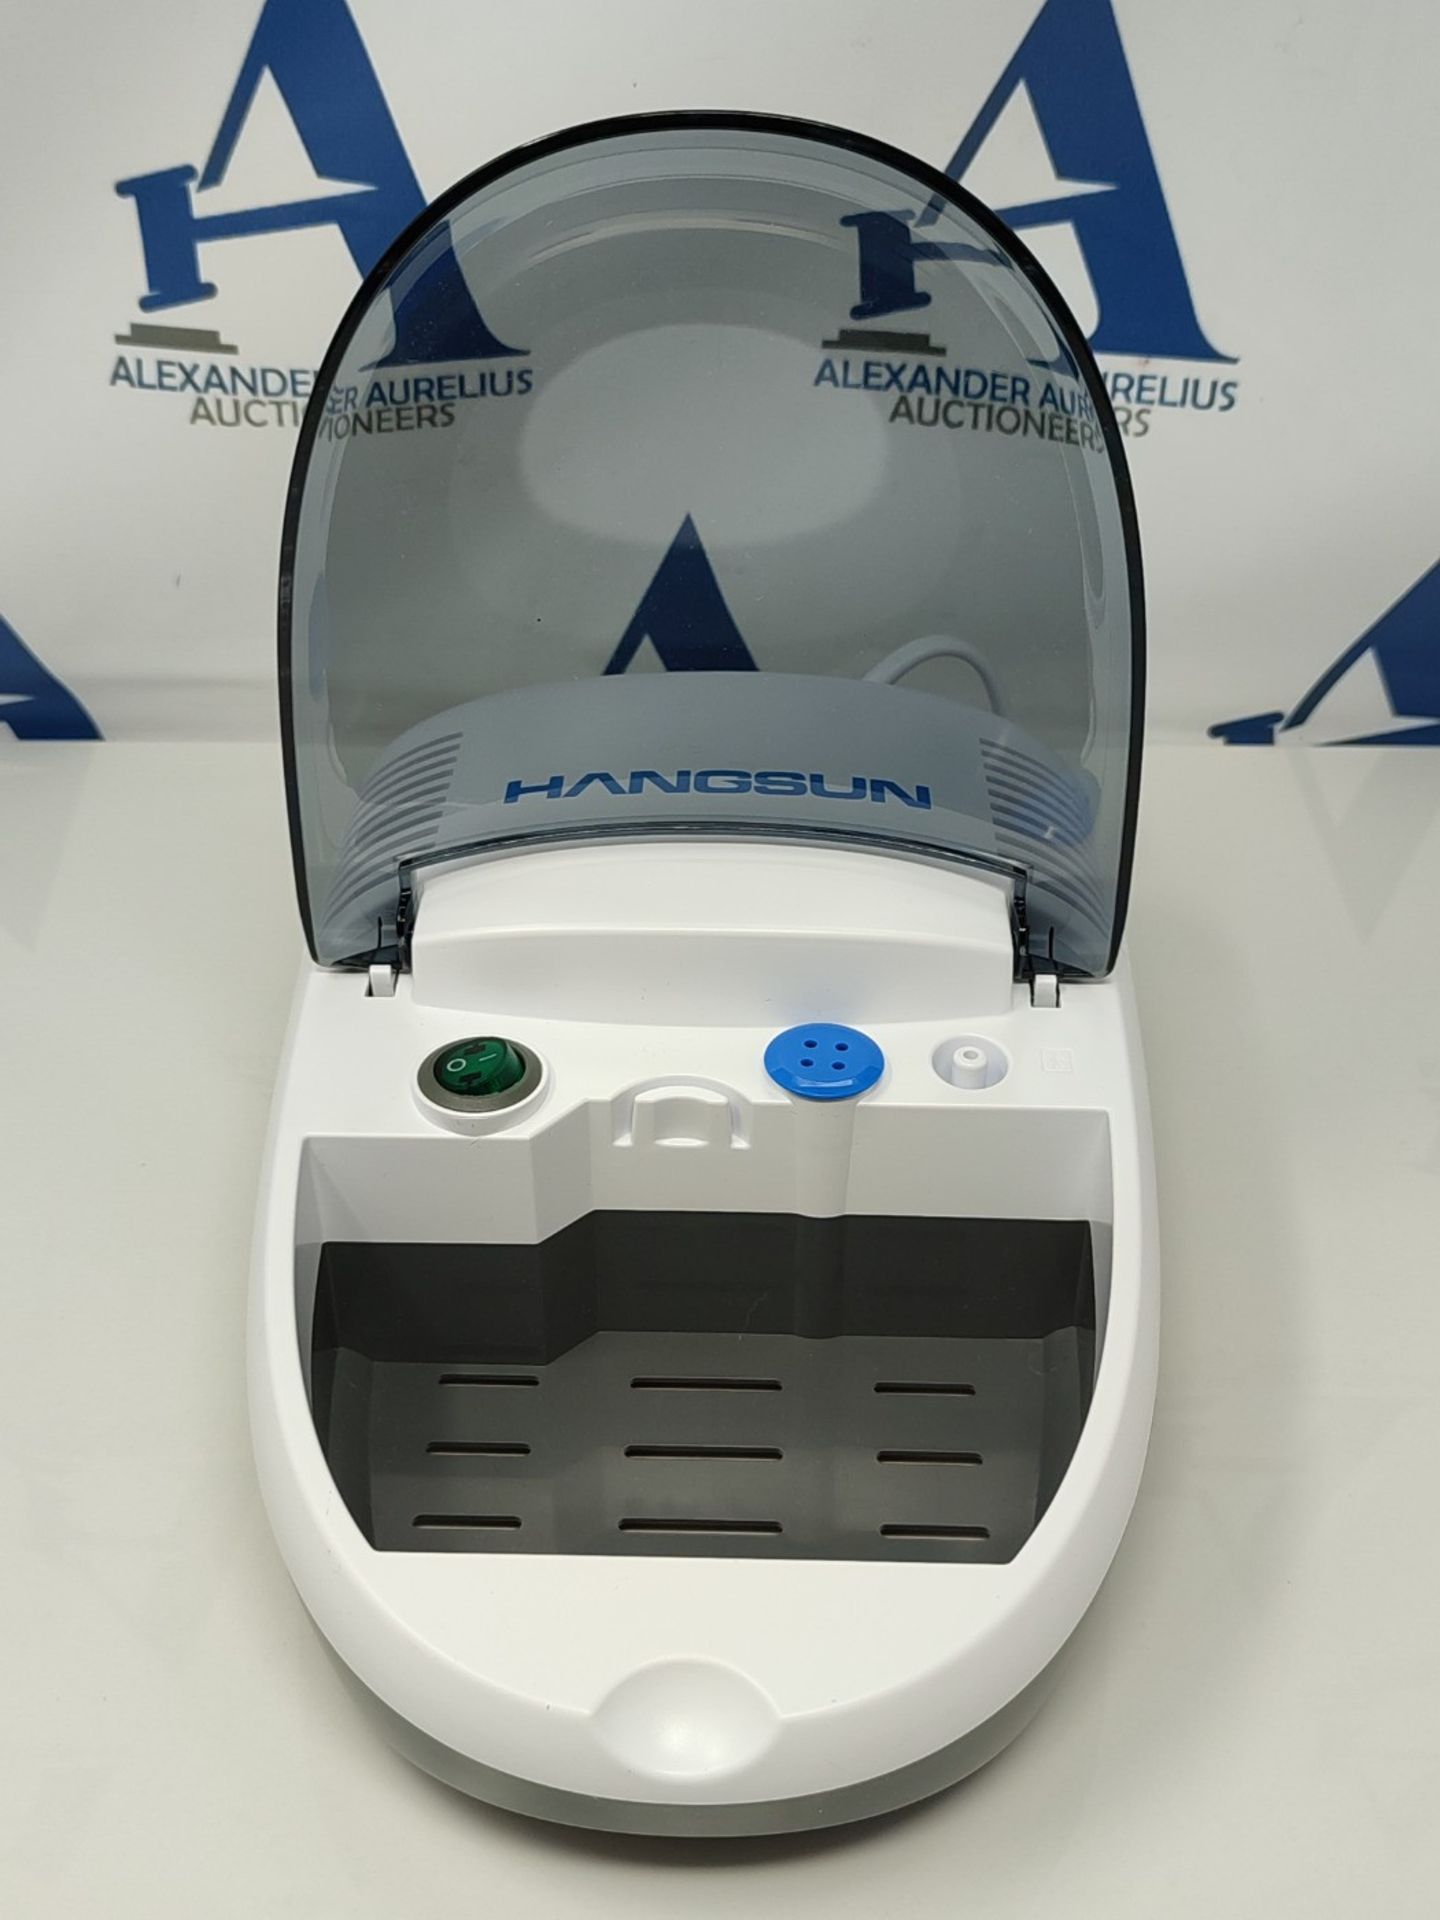 Hangsun Nebuliser Machine for Adults and Kids Compressor Nebulizer Compact Inhaler CN6 - Image 2 of 3